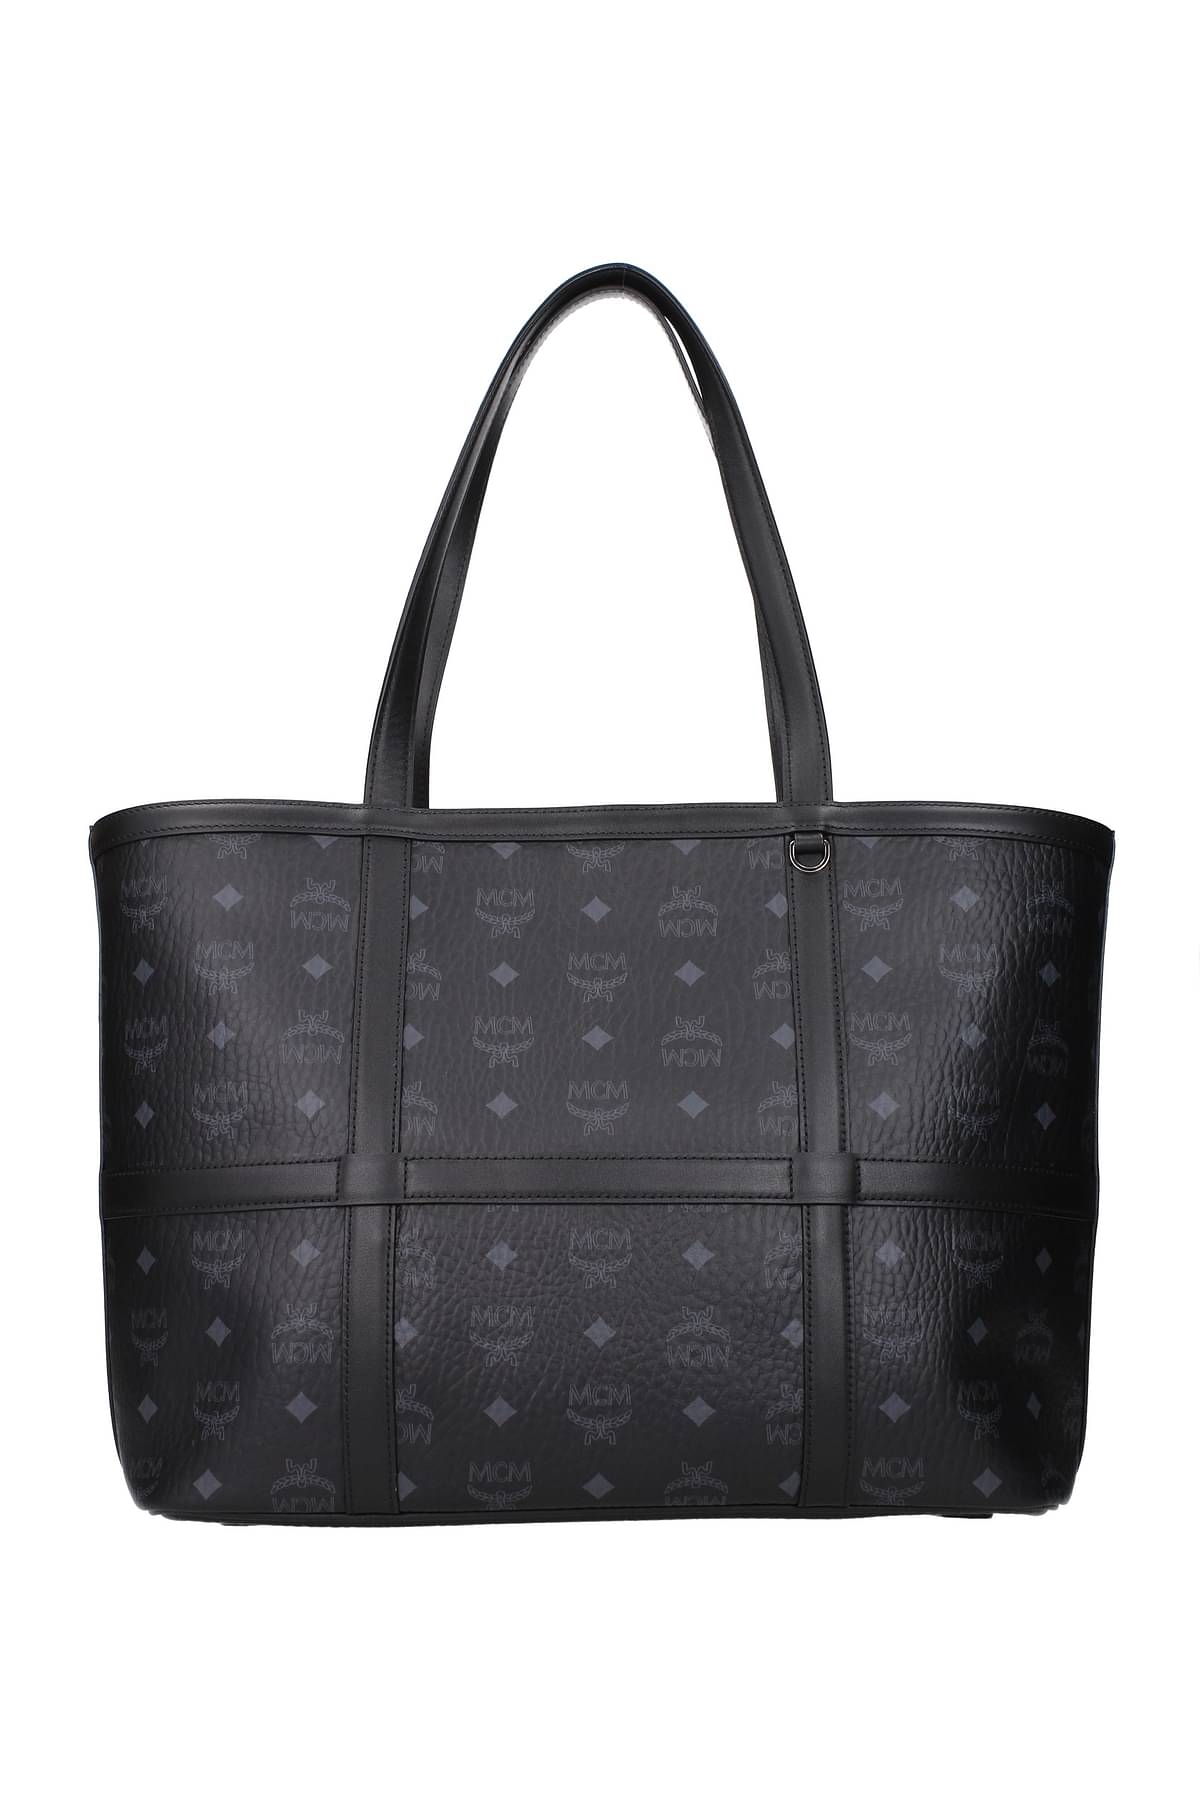 MCM Shoulder bags Women MWPBSER01BK001 Leather Black 548€